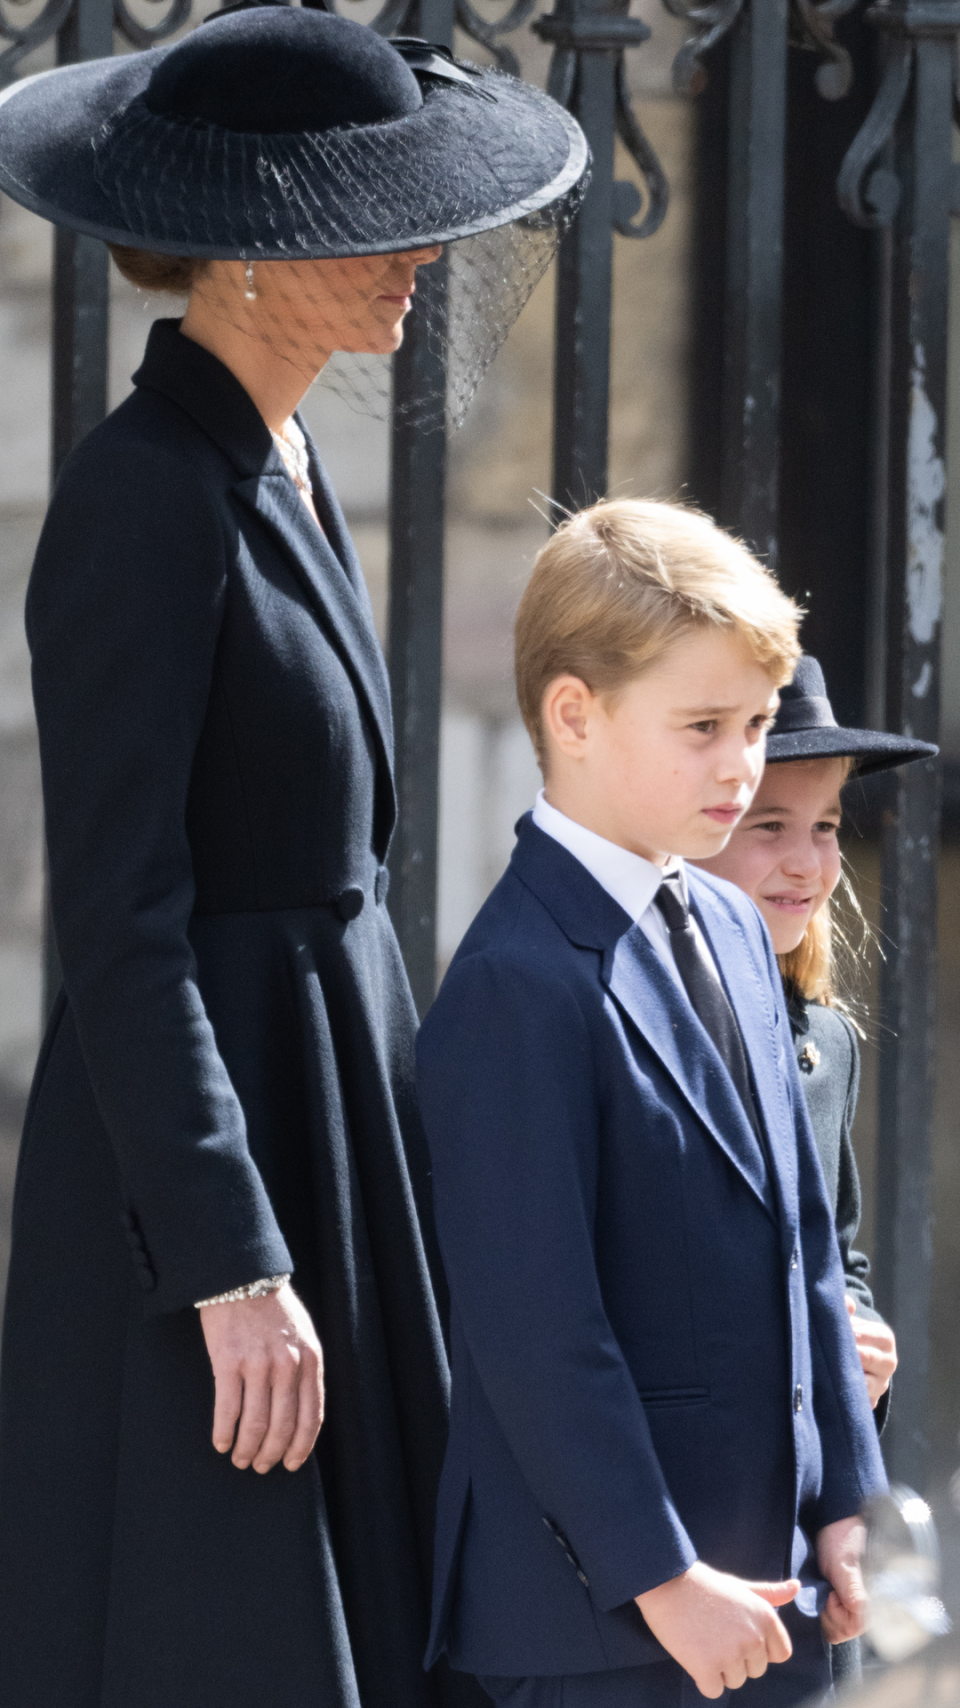 Sombre at Queen Elizabeth's funeral